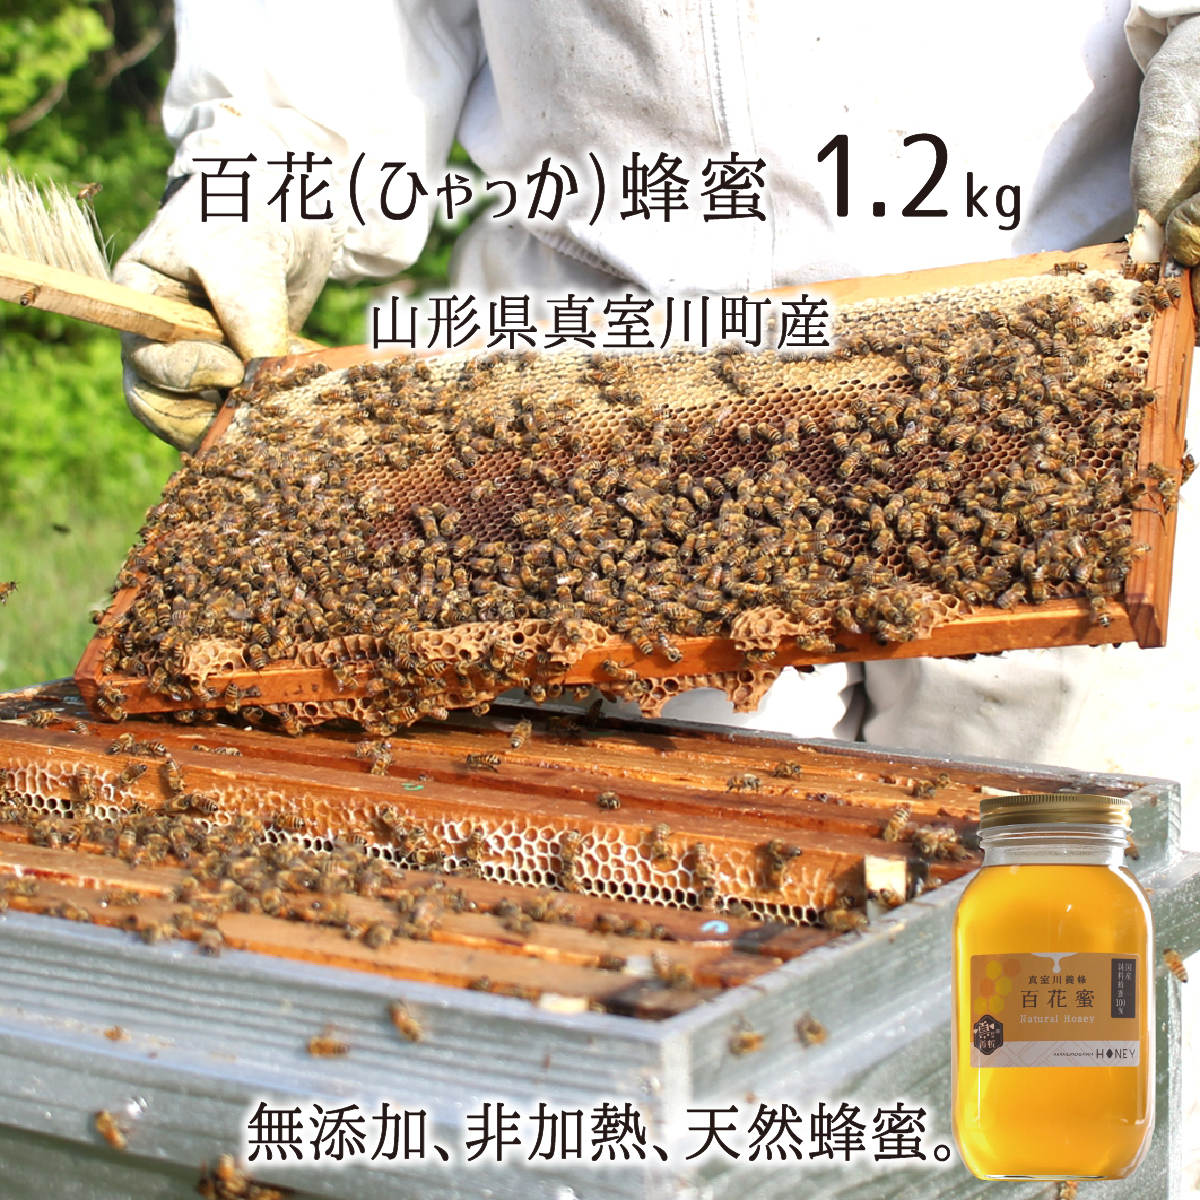 百花蜂蜜(糖度80以上) 無添加 非加熱 全原材料国産 天然